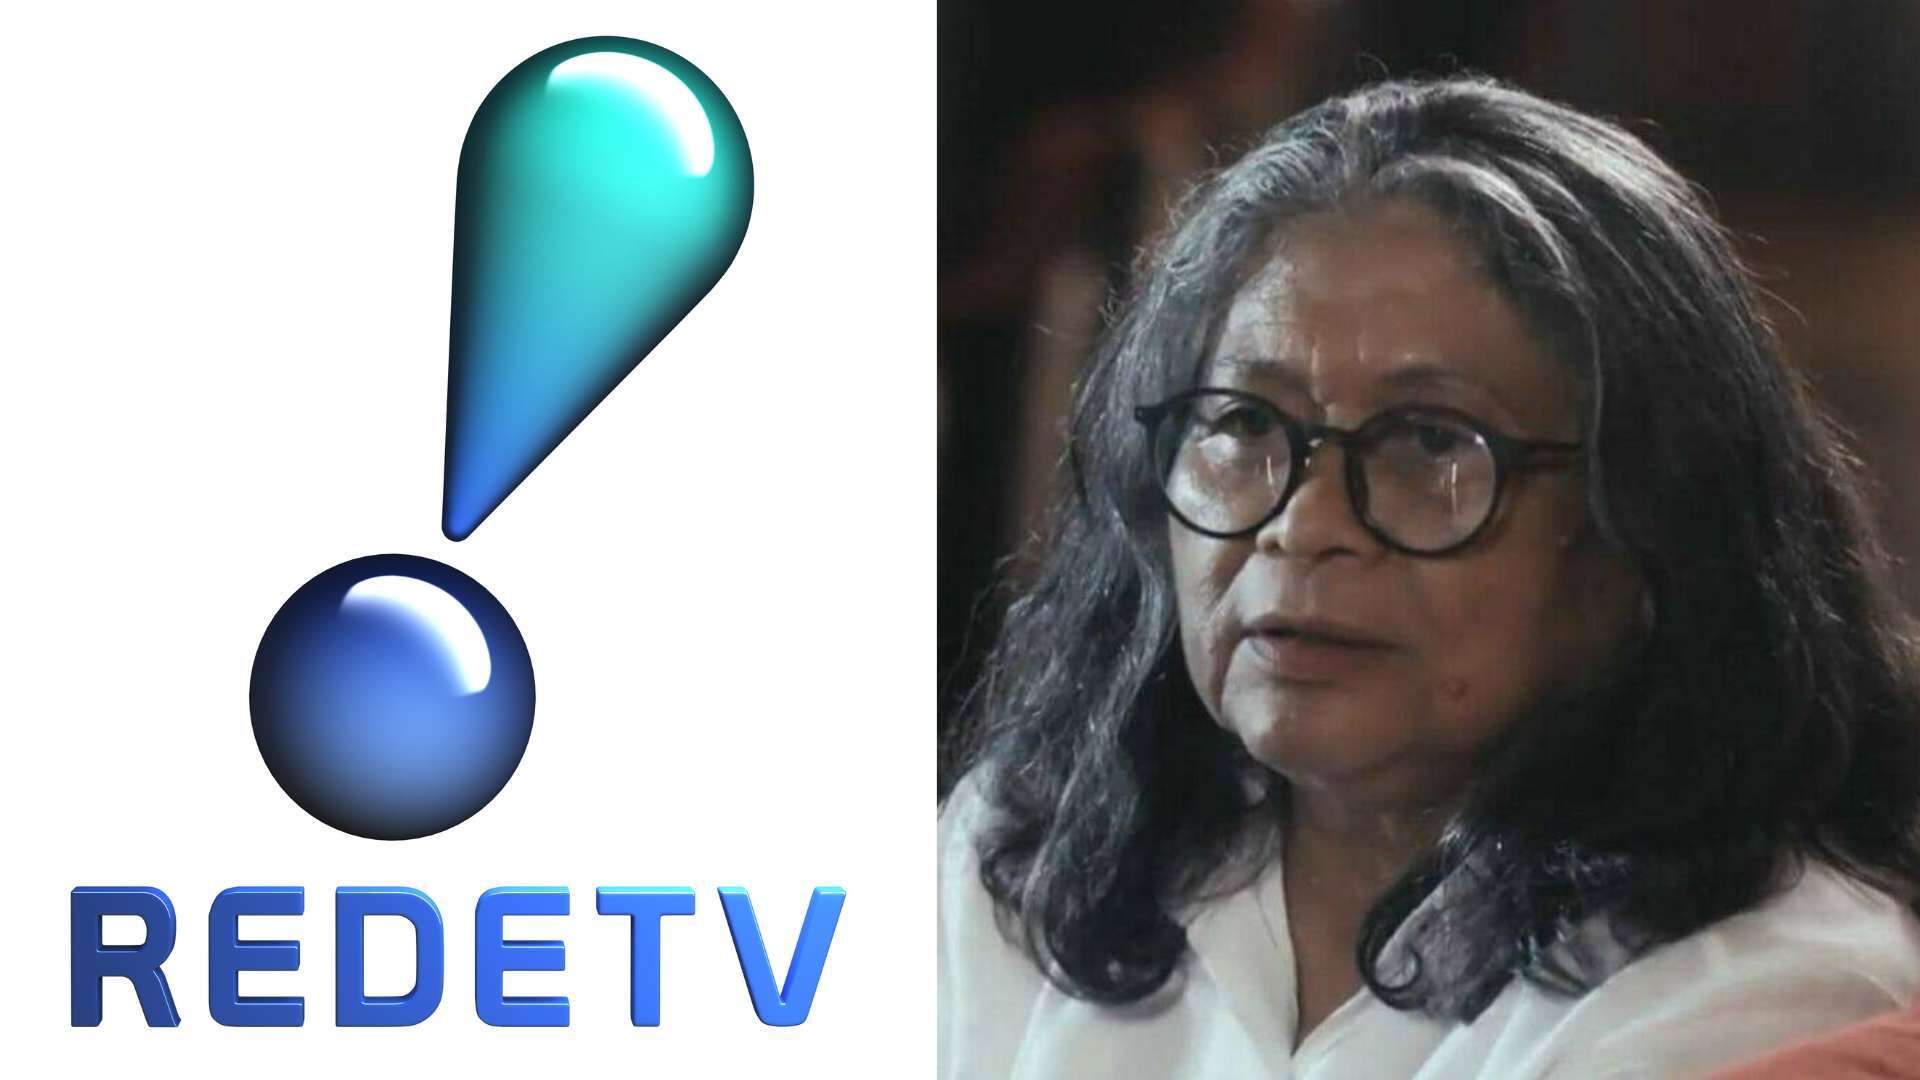 BOMBA: RedeTV! anuncia a contratação de Marlene Mattos como diretora de apresentador famoso